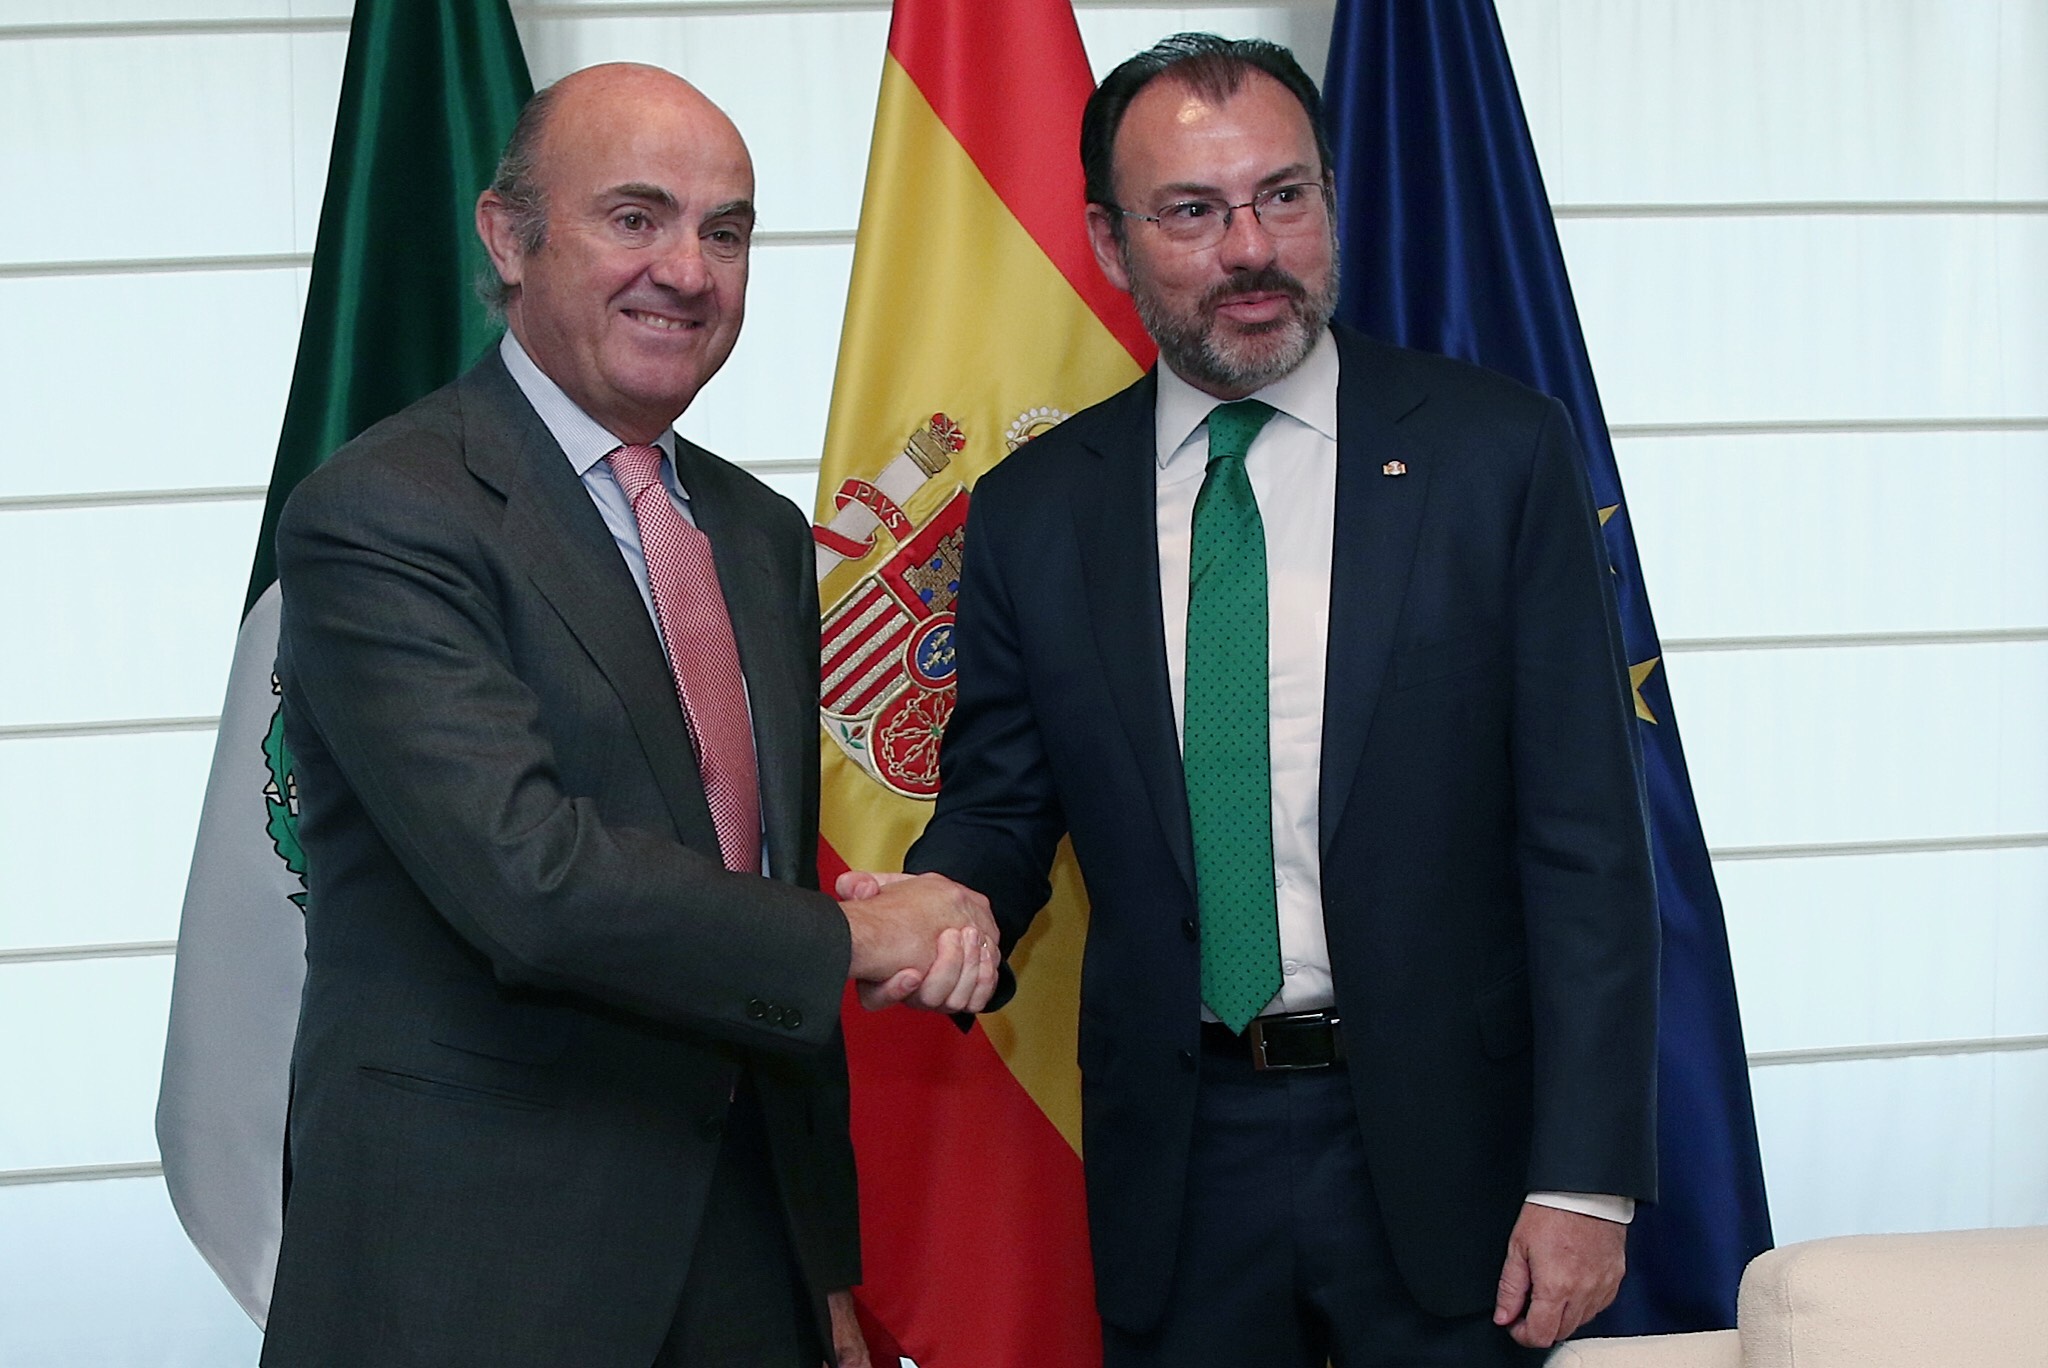 El Canciller Luis Videgaray con Luis de Guindos ministro de Economía de España. (SRE)